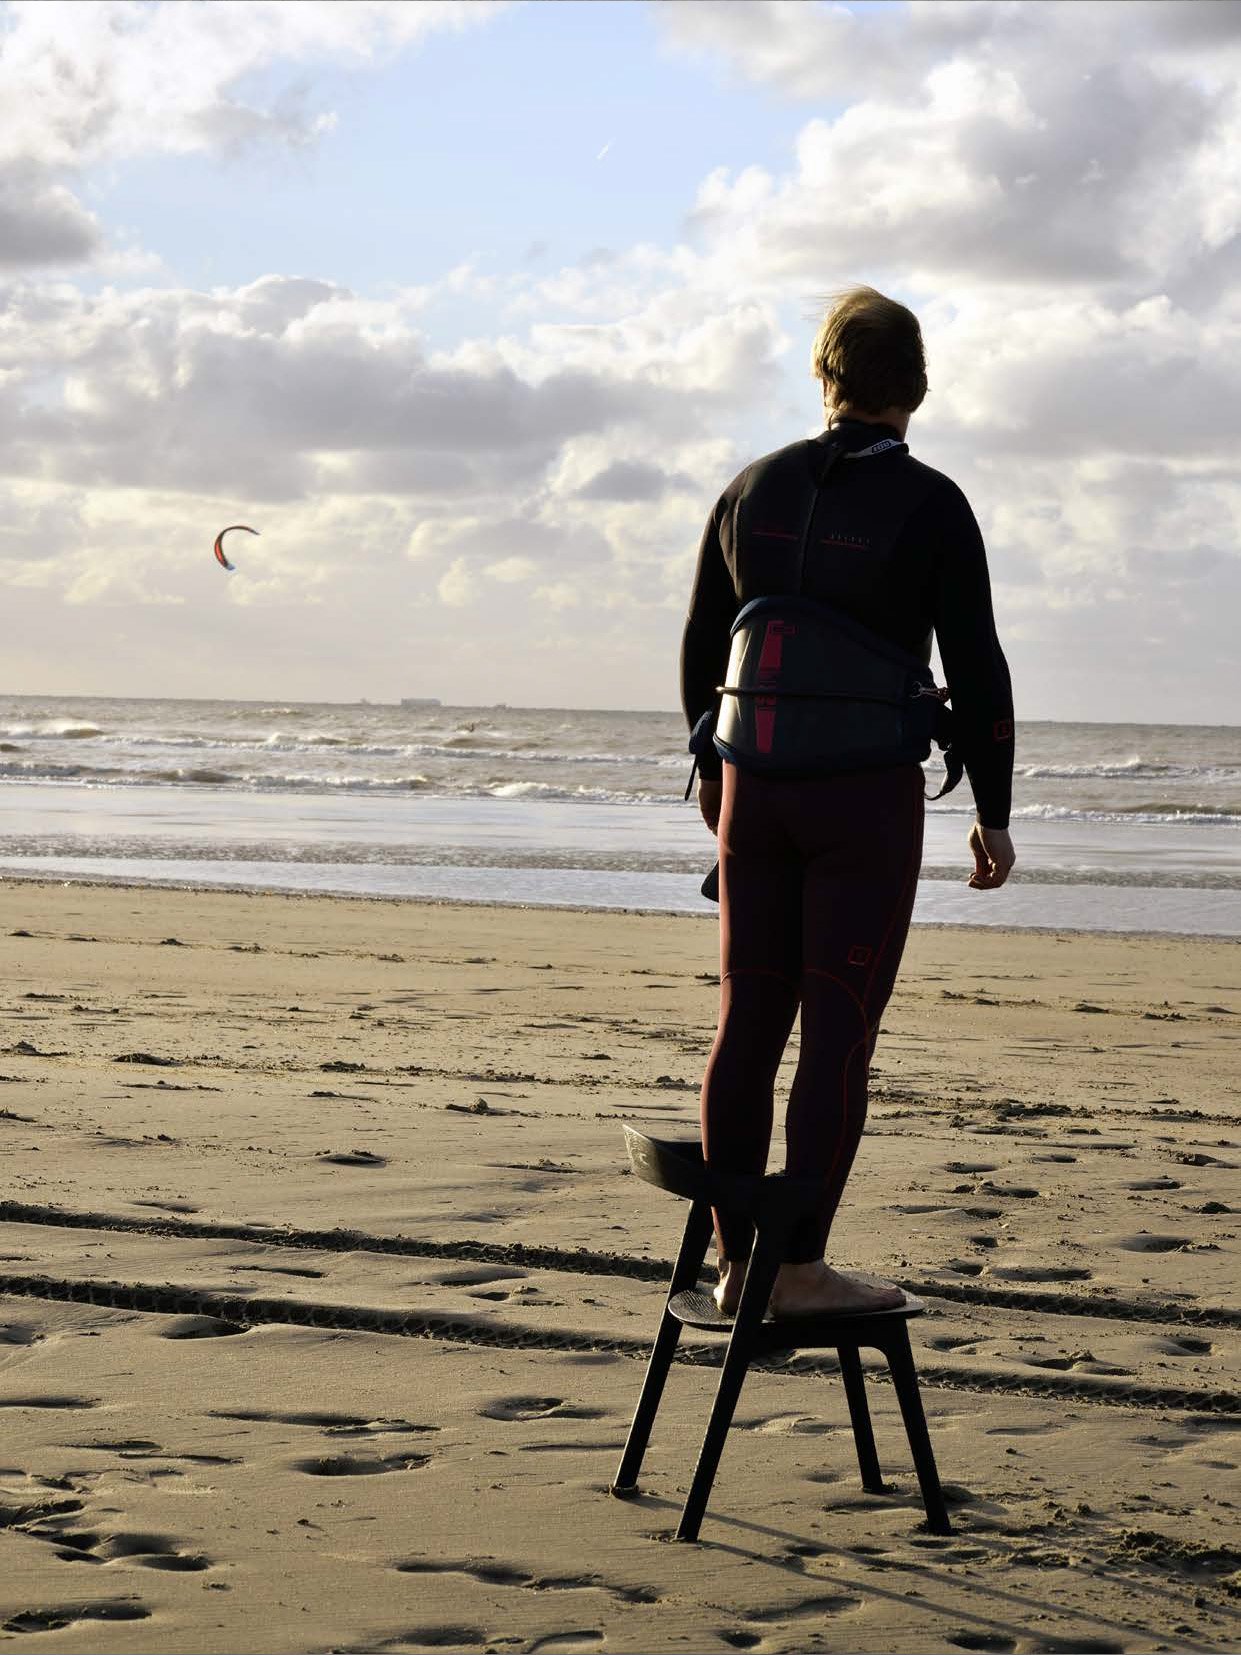 Alain van Havre on Bok chair by the sea